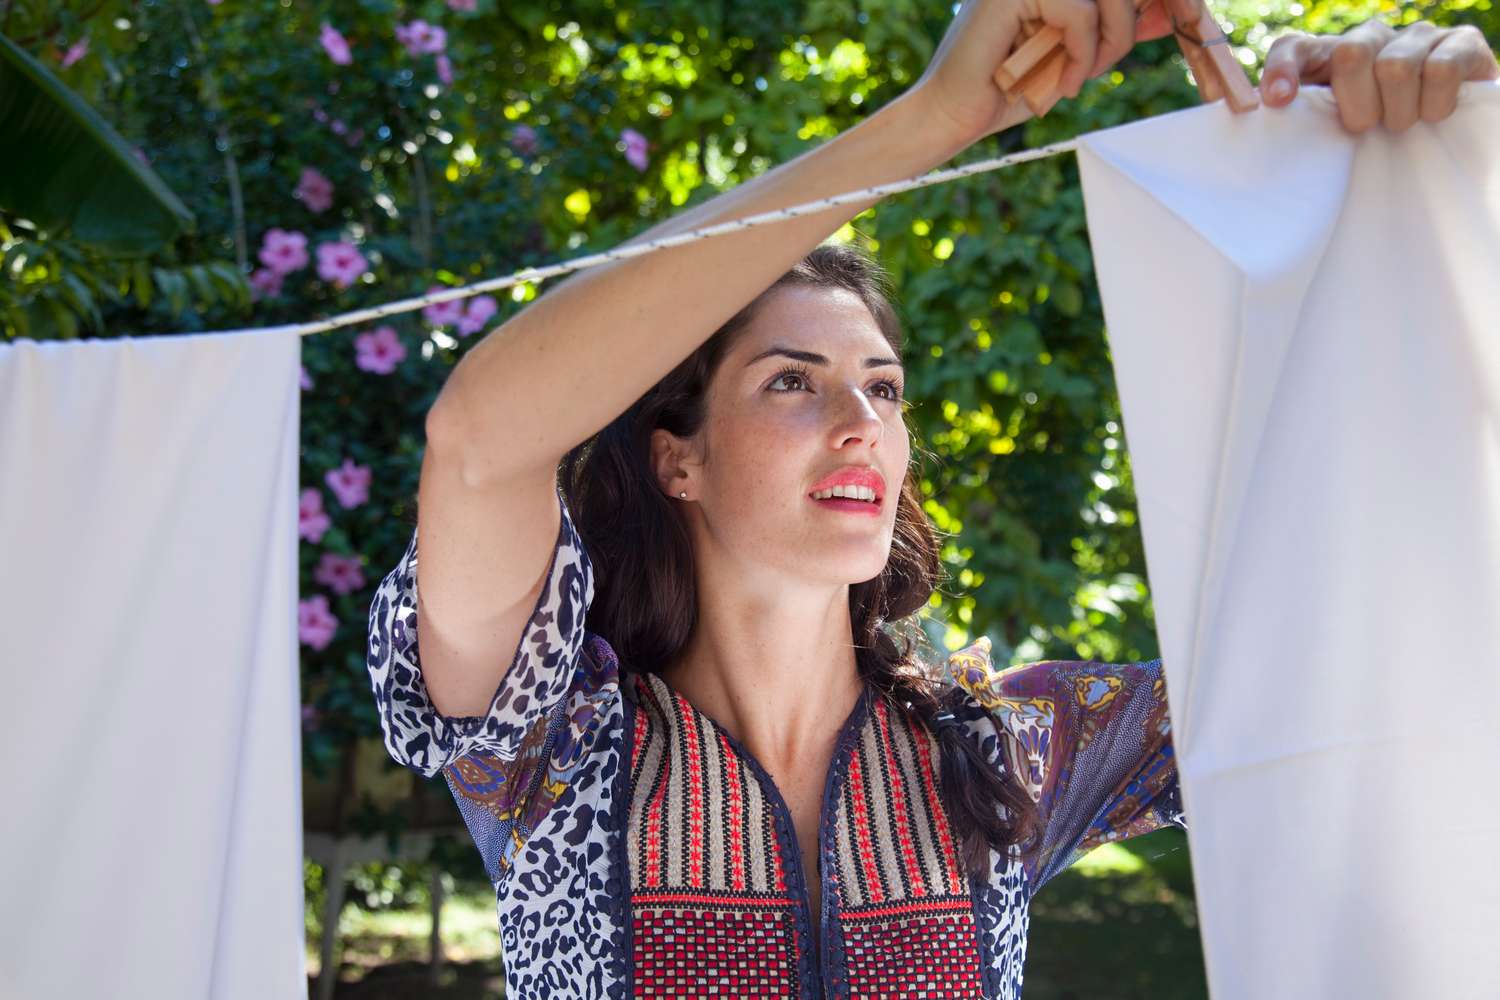 Frau hängt Wäsche an einer Wäscheleine im Freien auf.